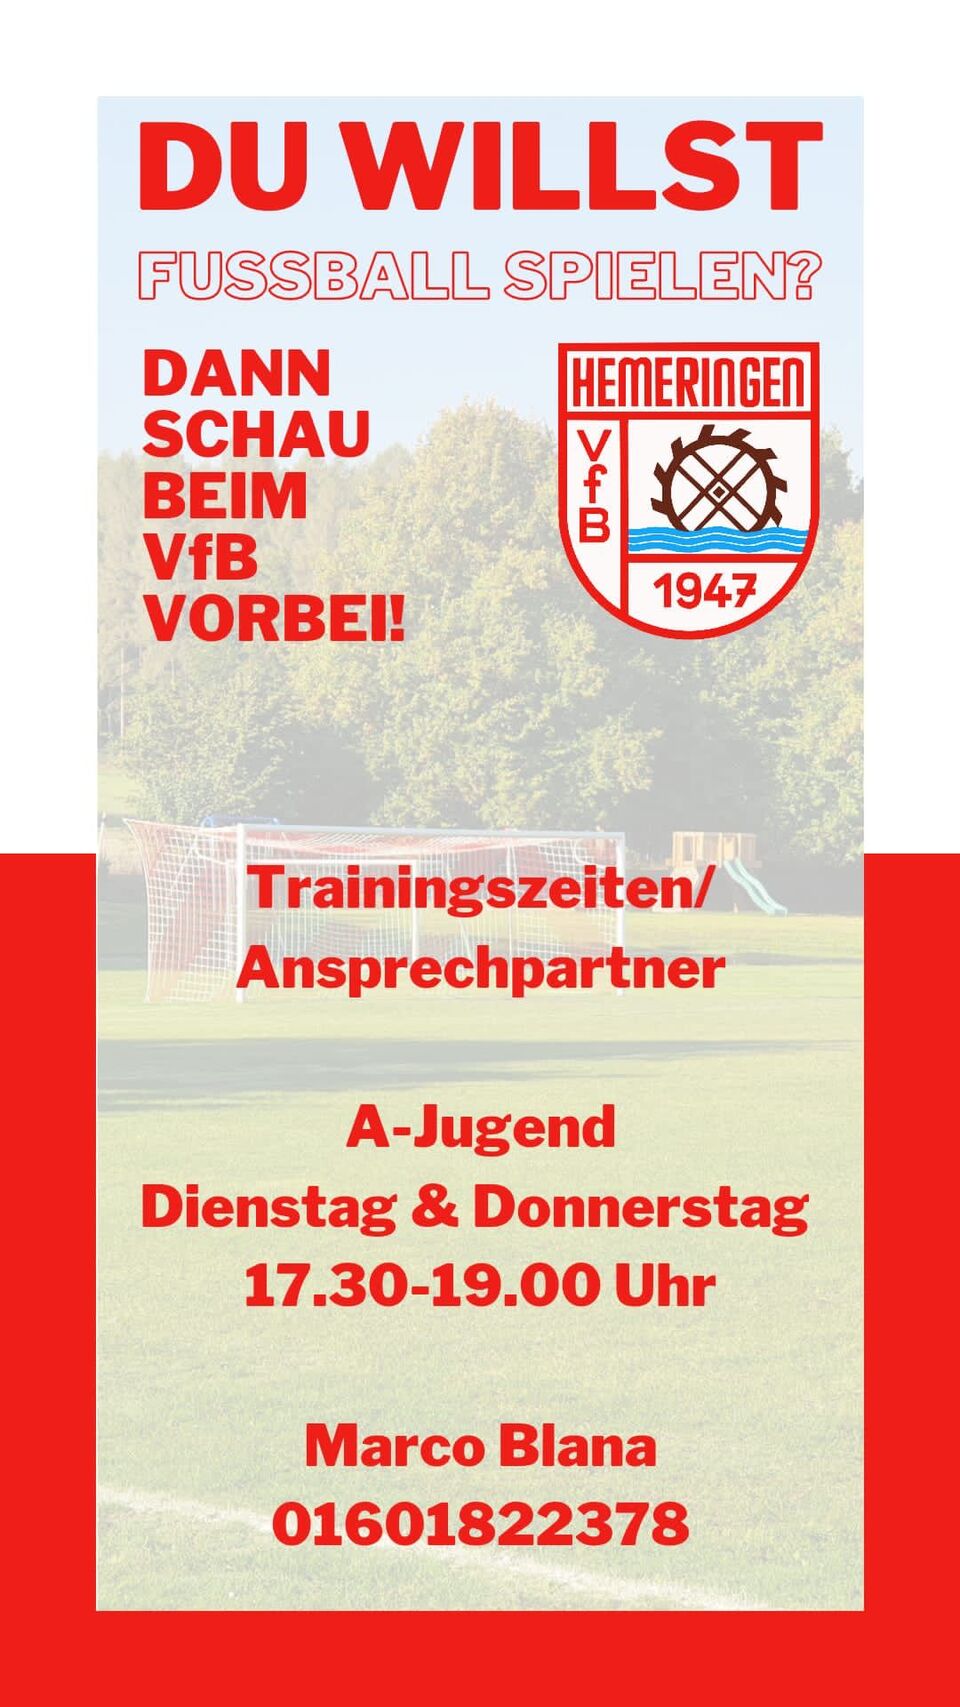 VfB Hemeringen A-Jugend Trainingszeiten